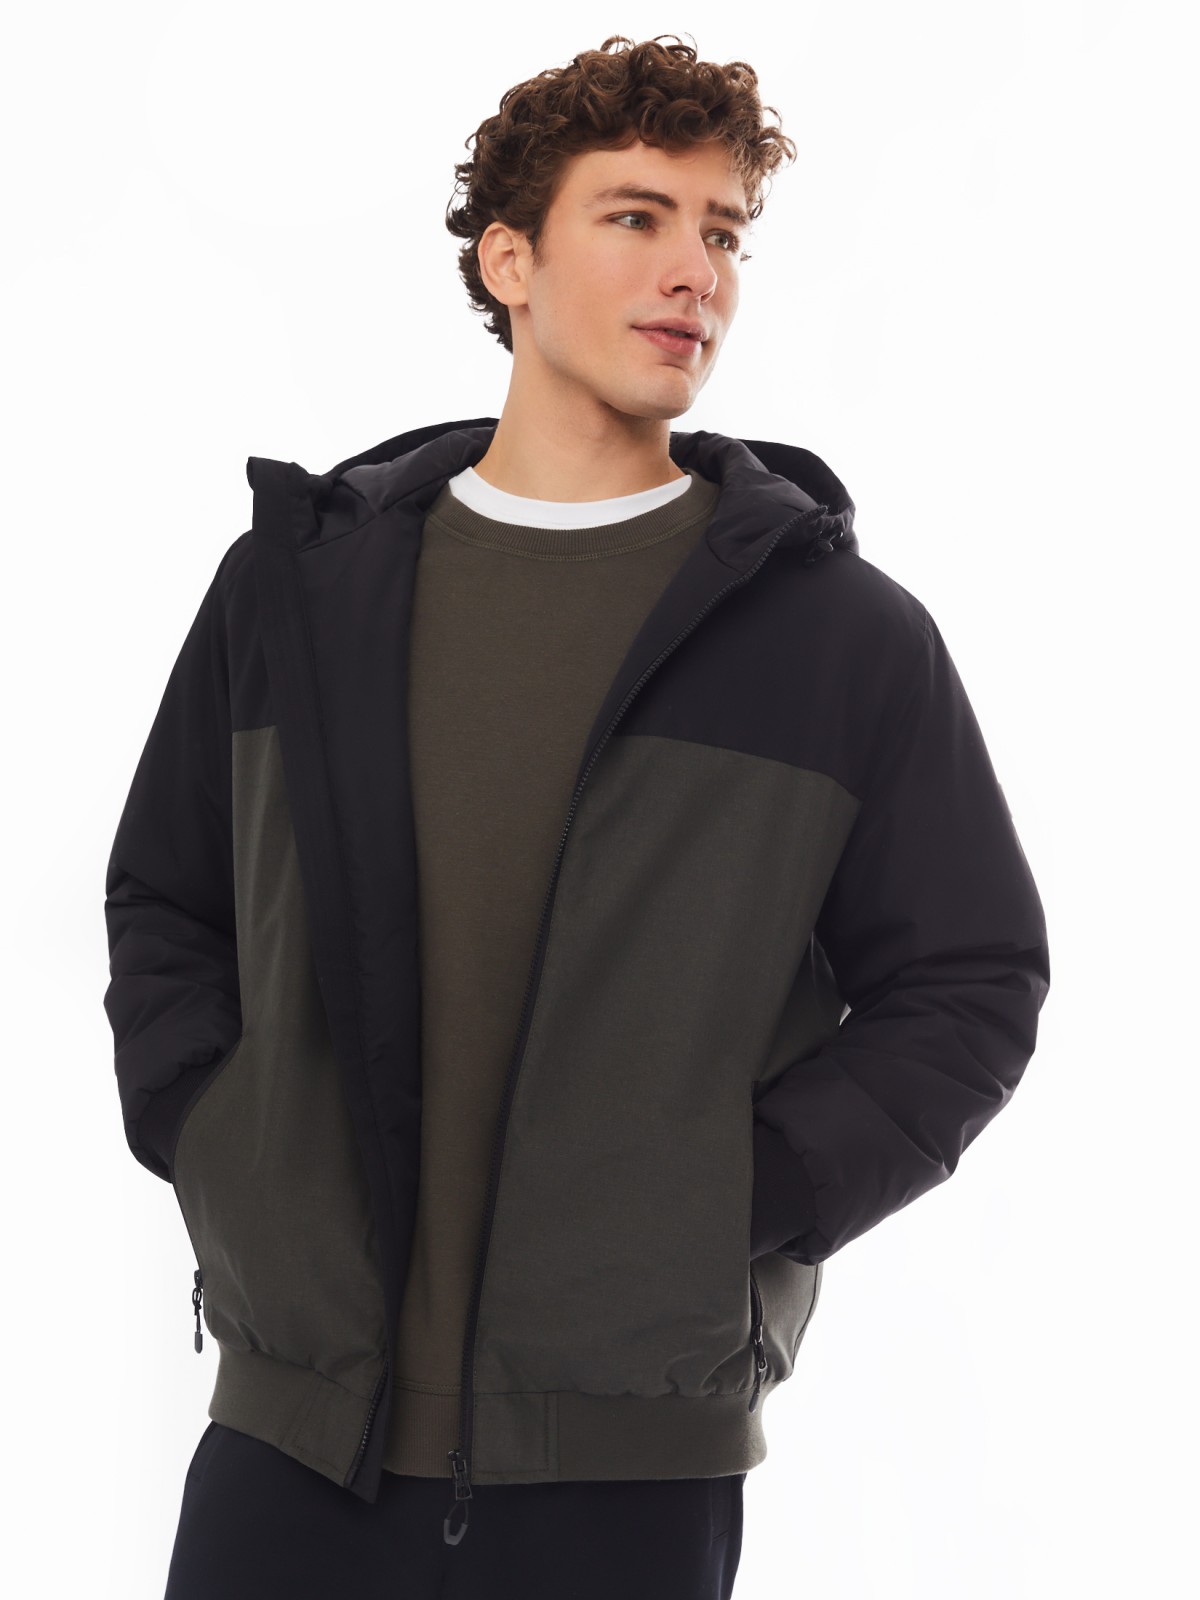 Утеплённая куртка-бомбер на синтепоне с капюшоном zolla цвета хаки